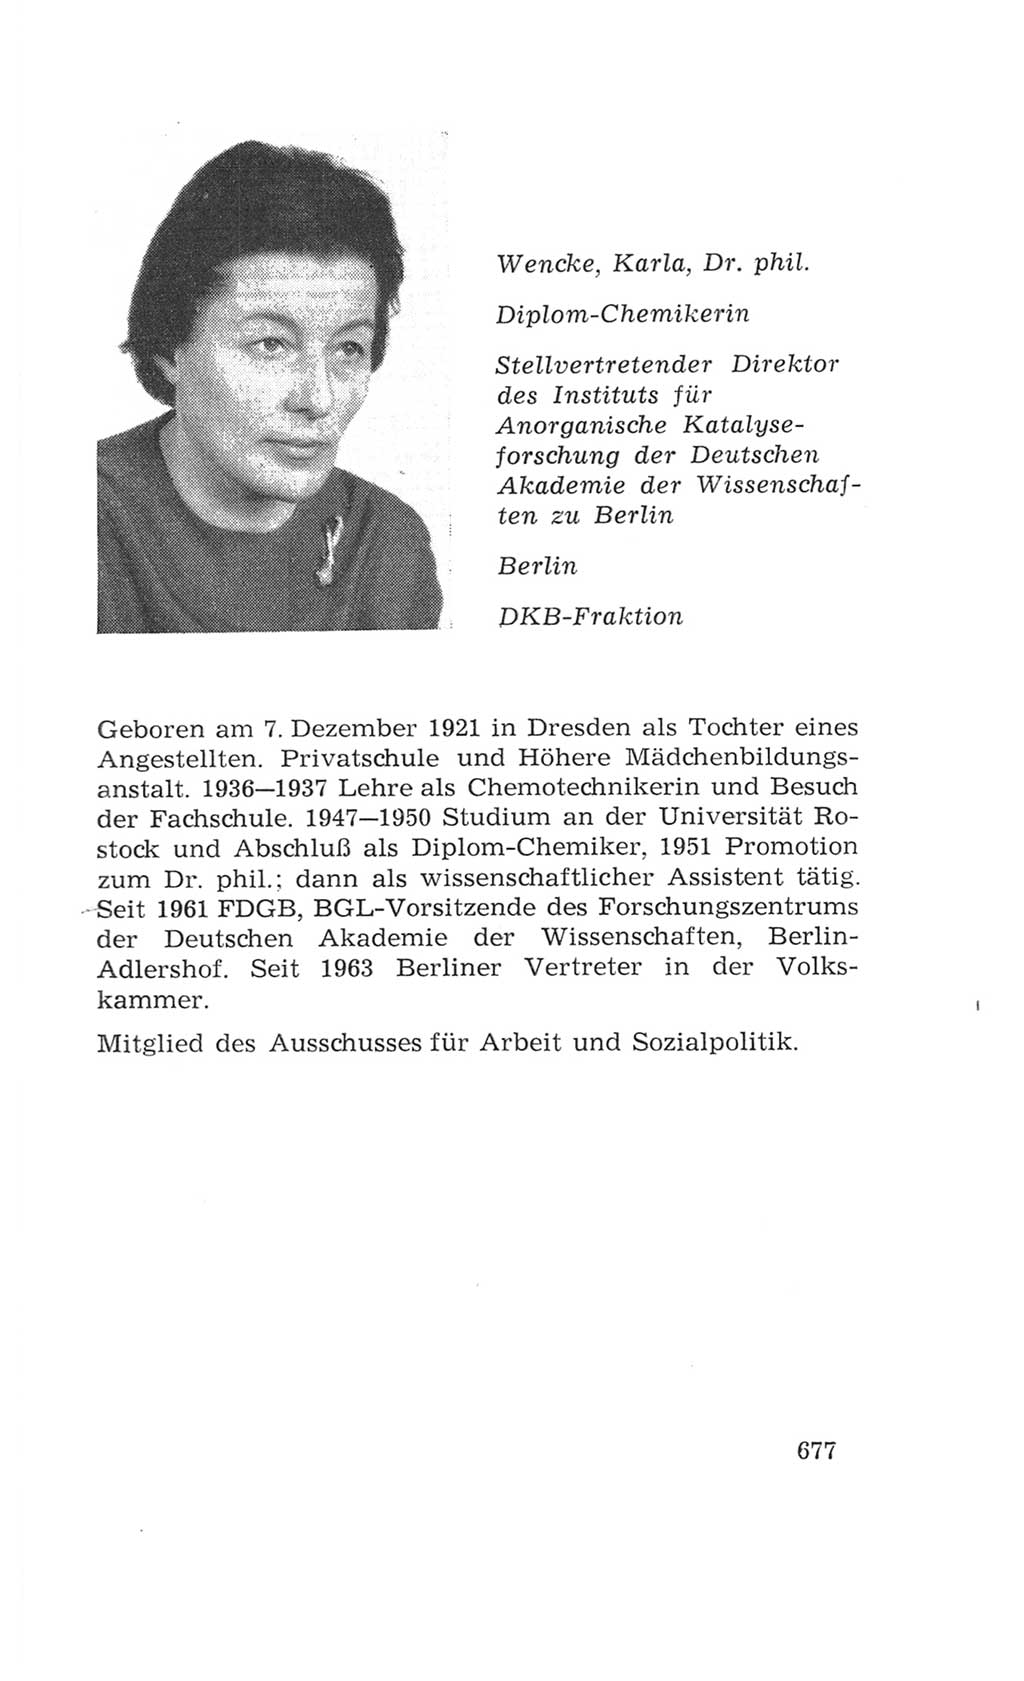 Volkskammer (VK) der Deutschen Demokratischen Republik (DDR), 4. Wahlperiode 1963-1967, Seite 677 (VK. DDR 4. WP. 1963-1967, S. 677)